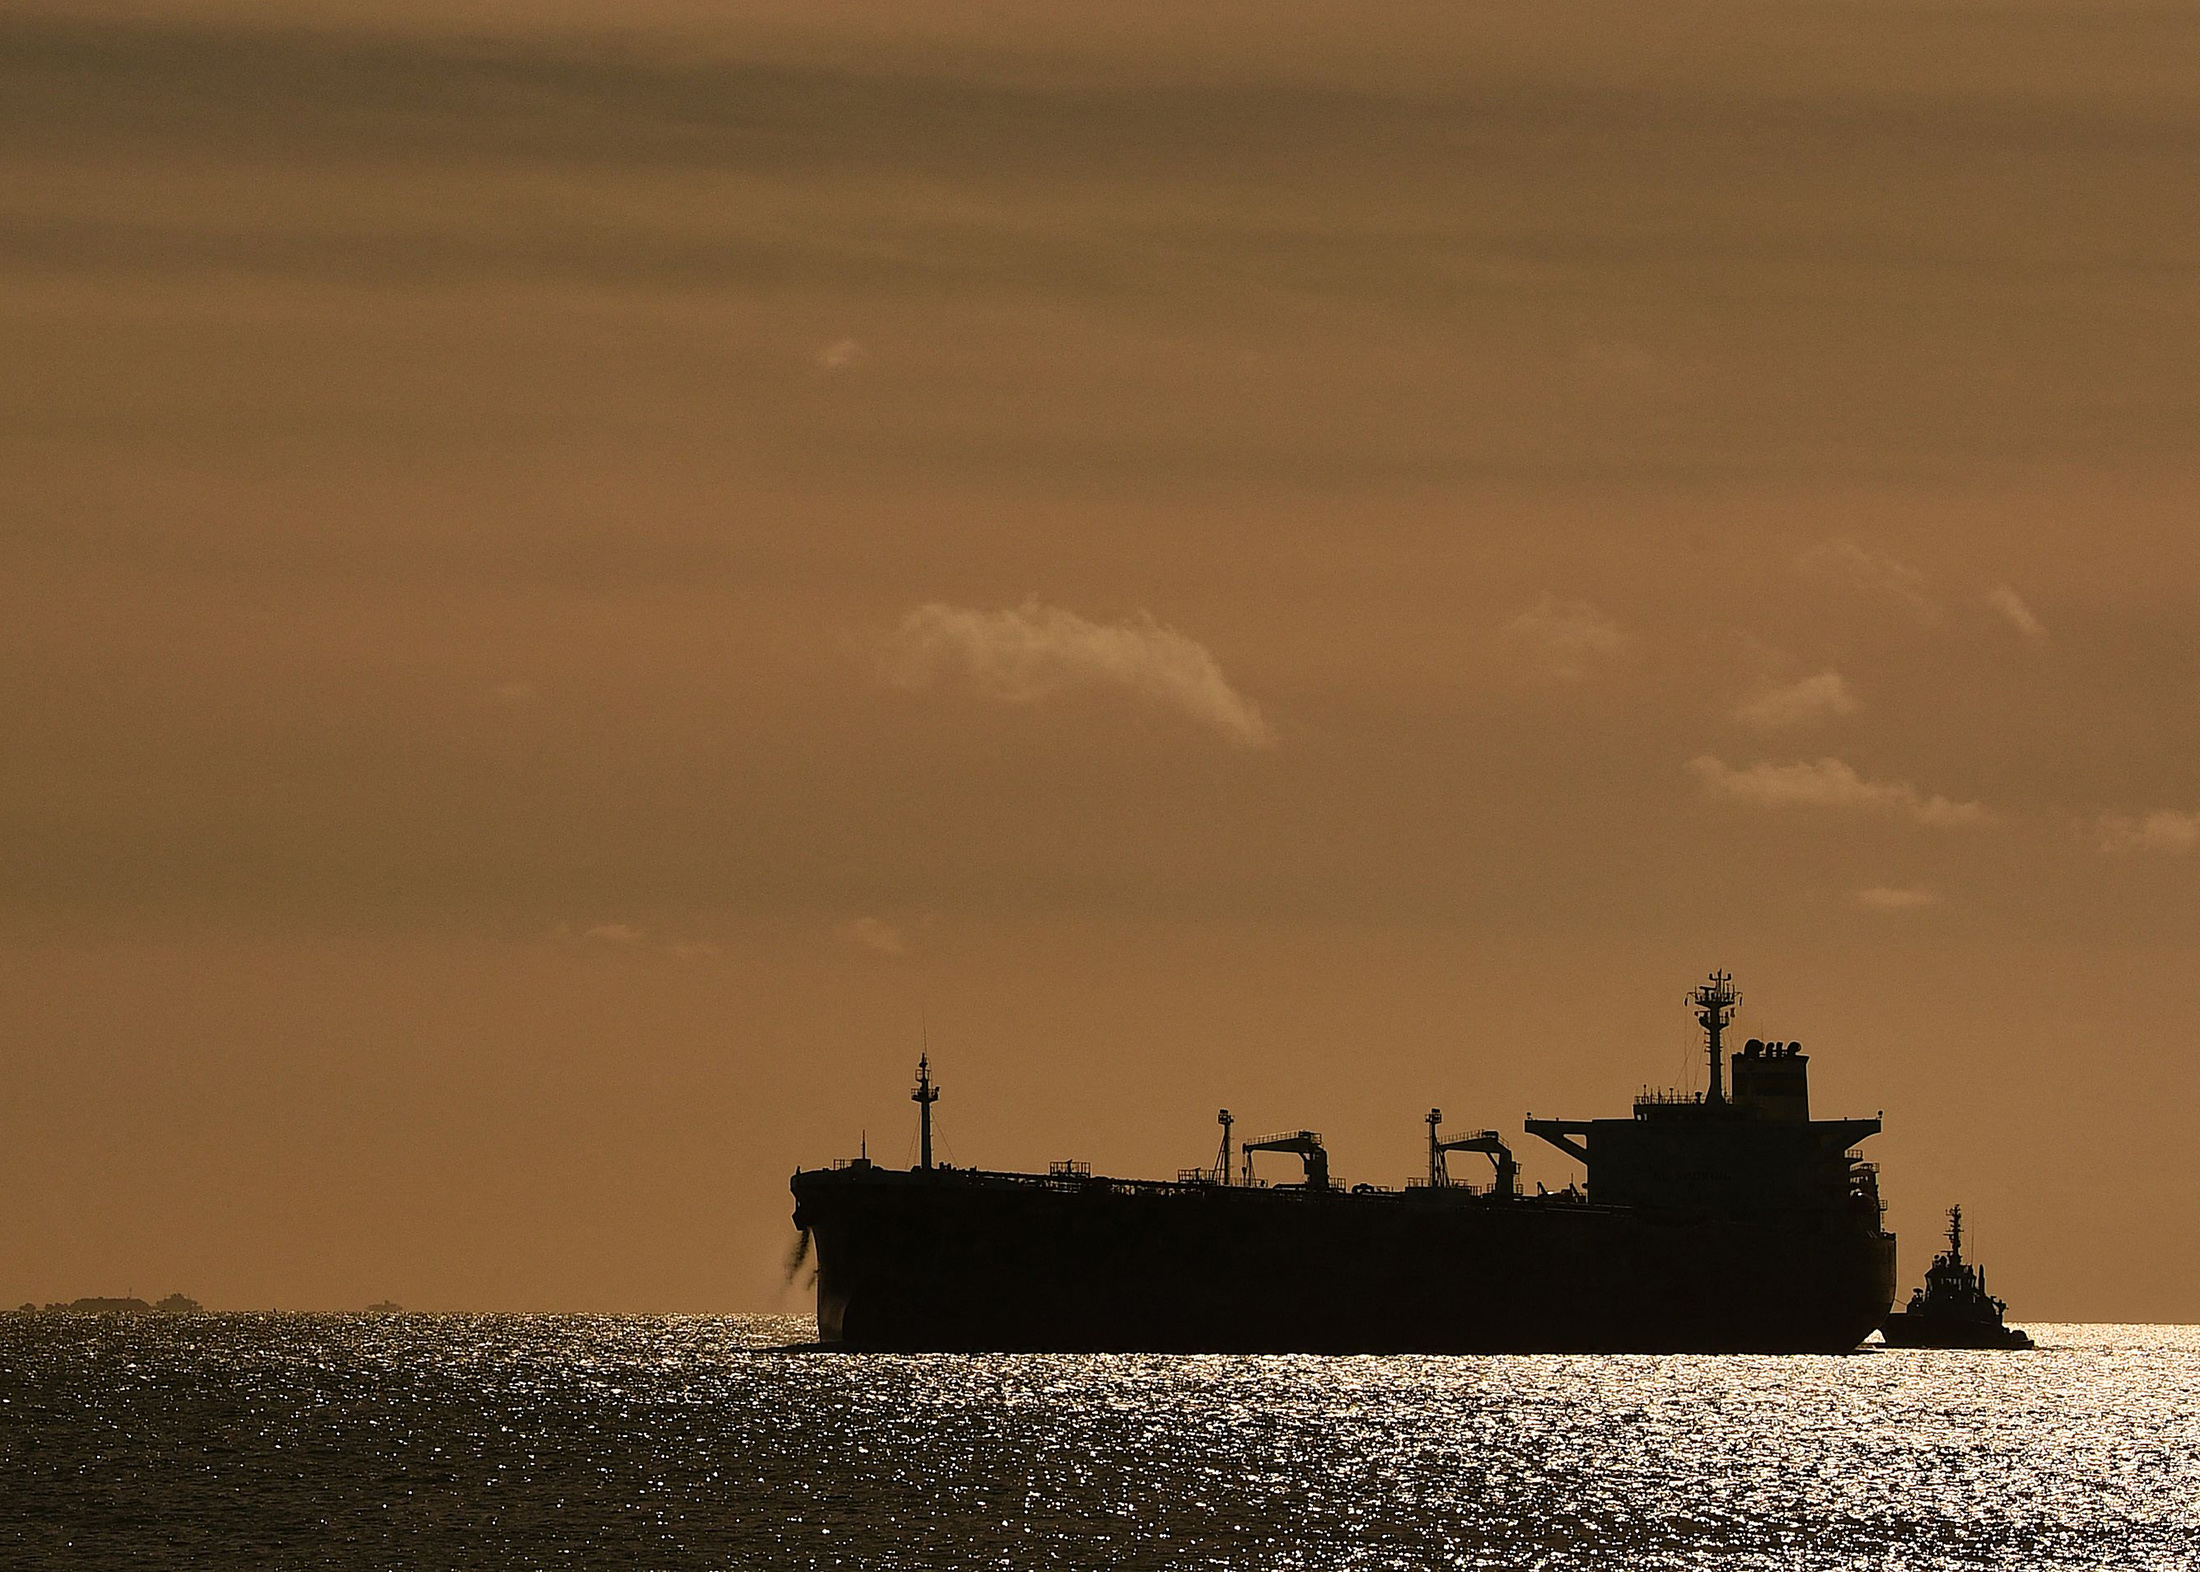 An oil tanker against the sunset.